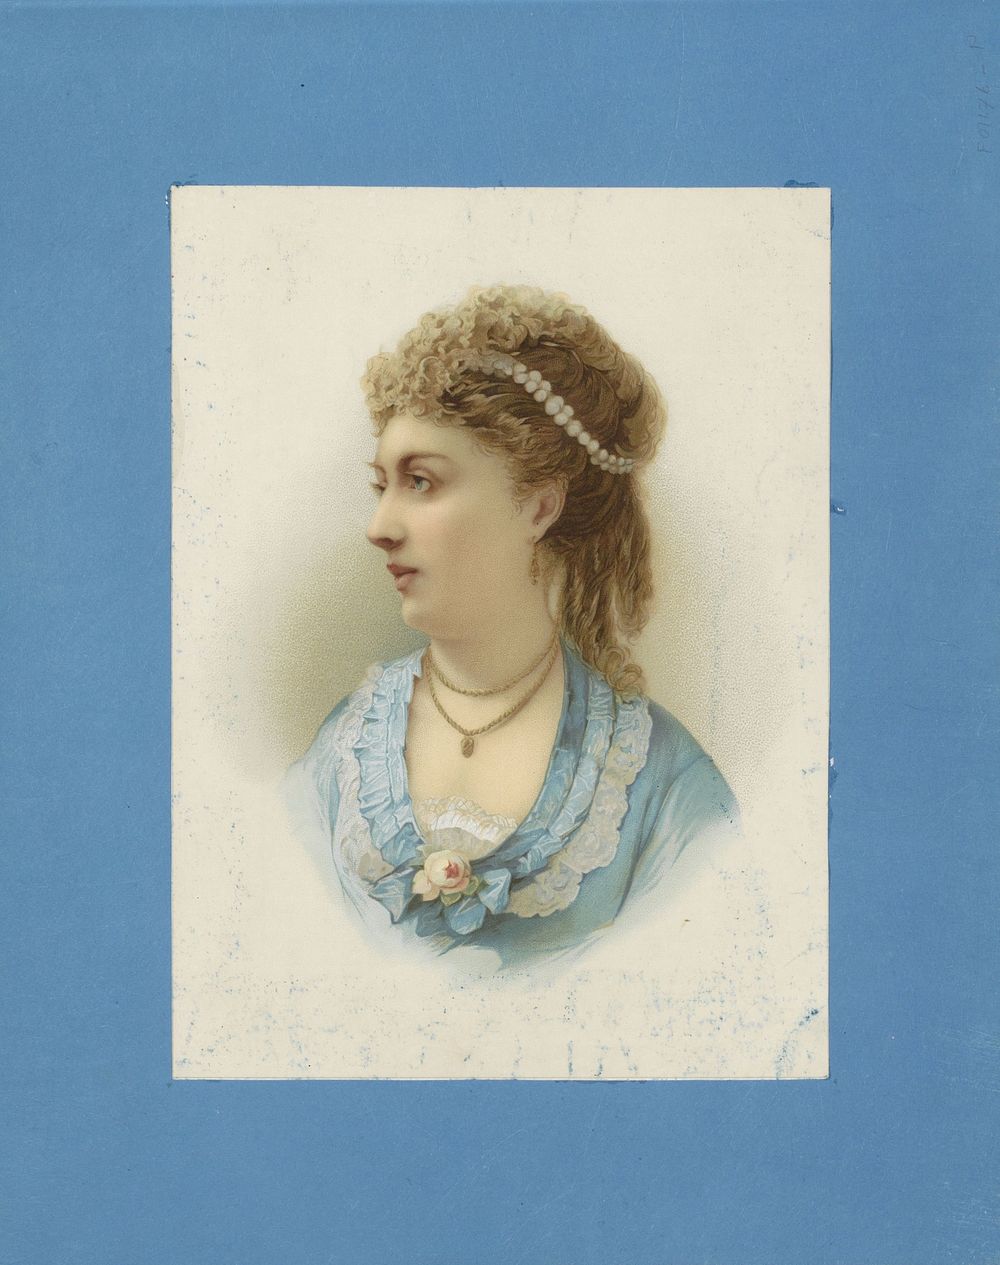 Portret van een vrouw naar (vermoedelijk) een schilderij (1850 - 1876) by anonymous and anonymous